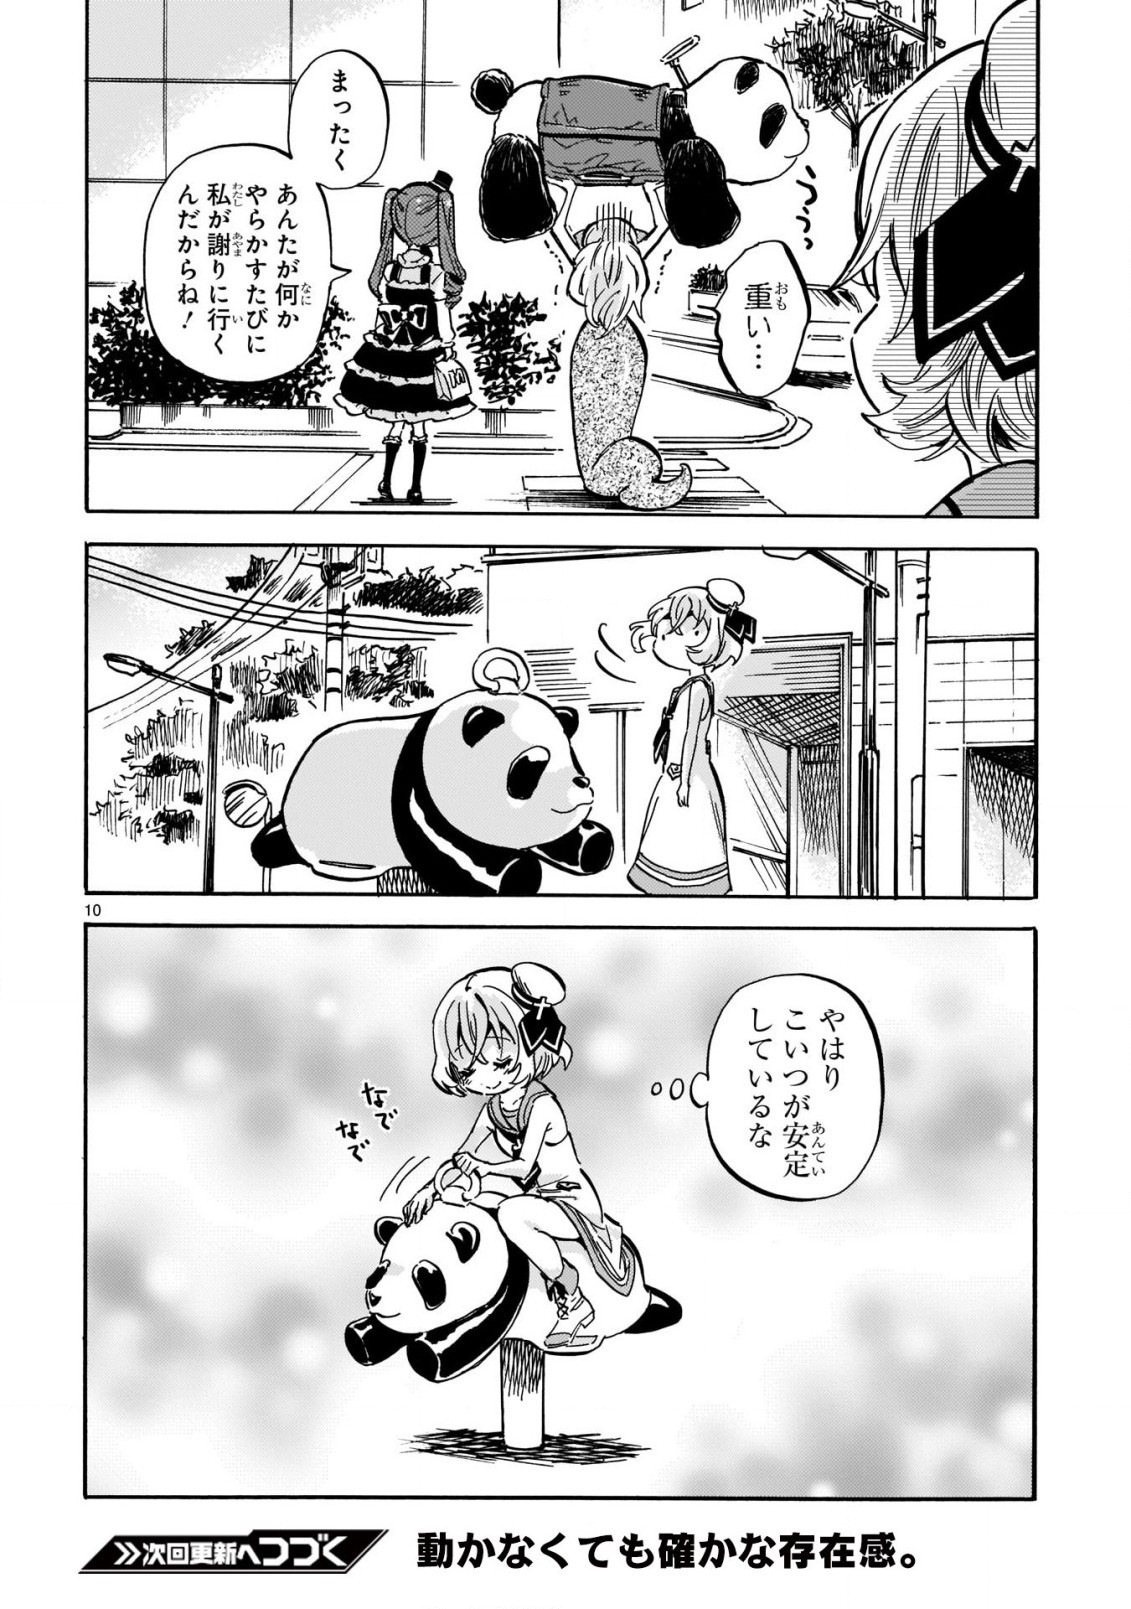 Jashin-chan Dropkick - Chapter 207 - Page 10